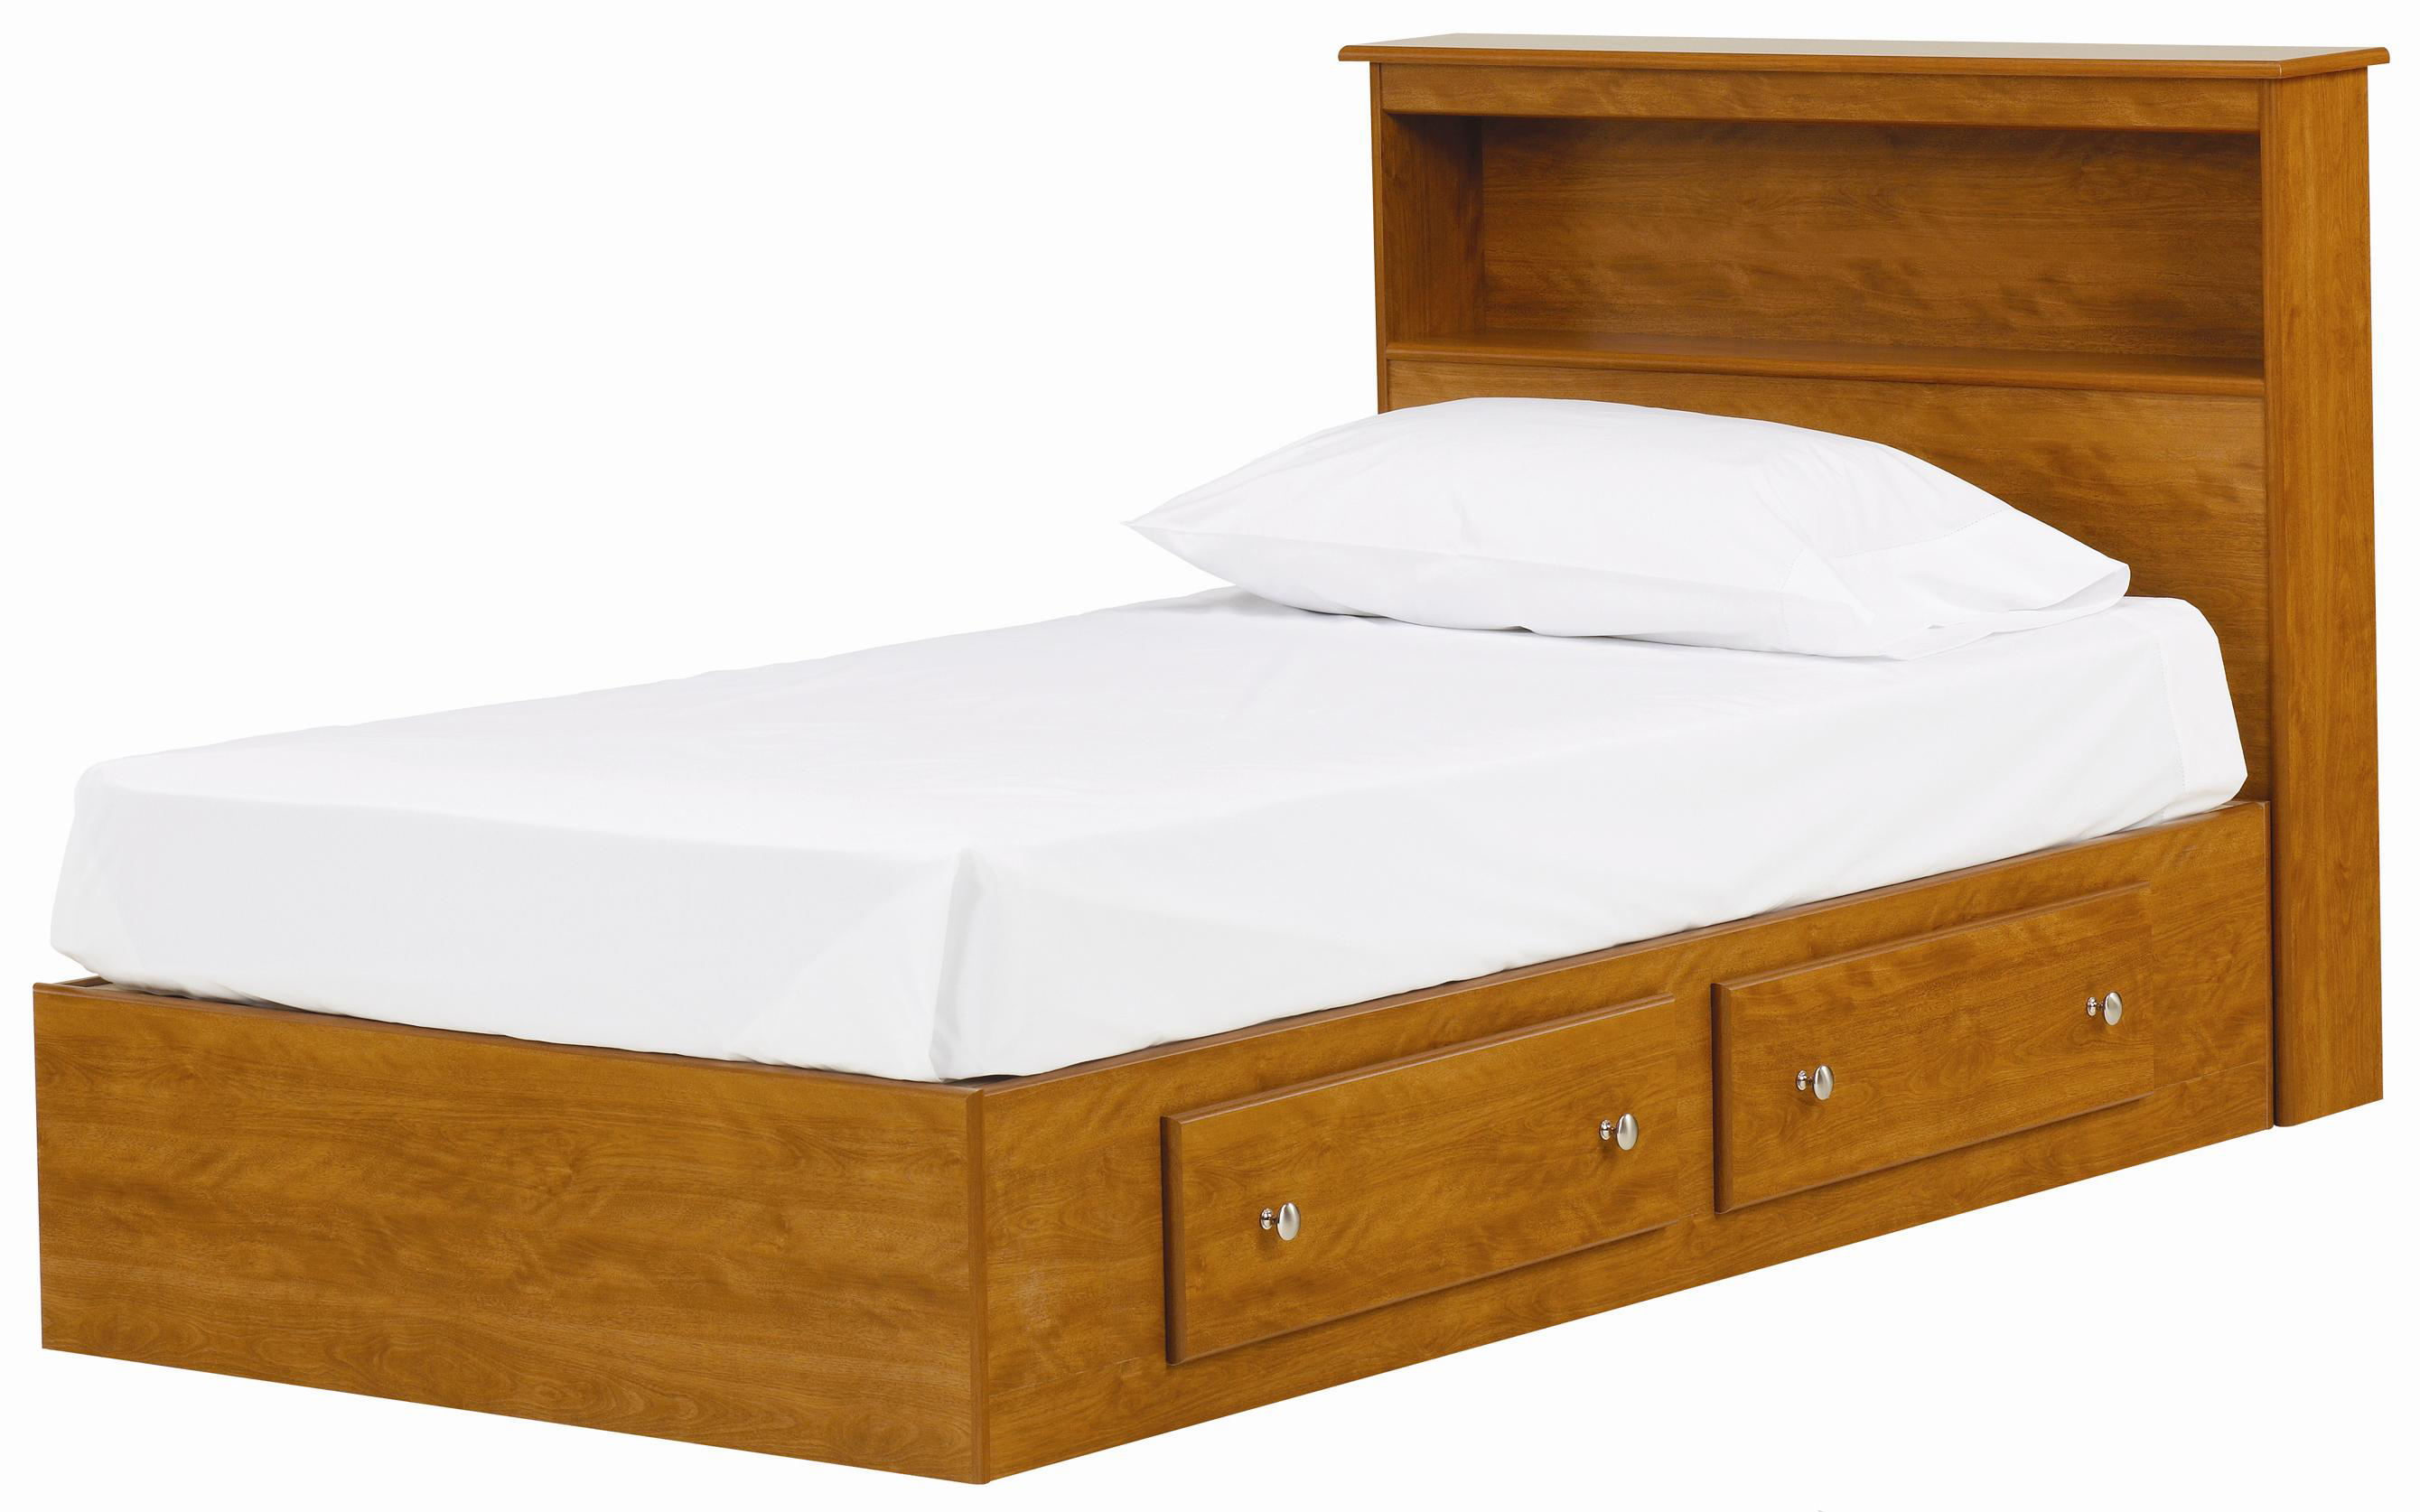 Giường ngủ gỗ có ngăn kéo